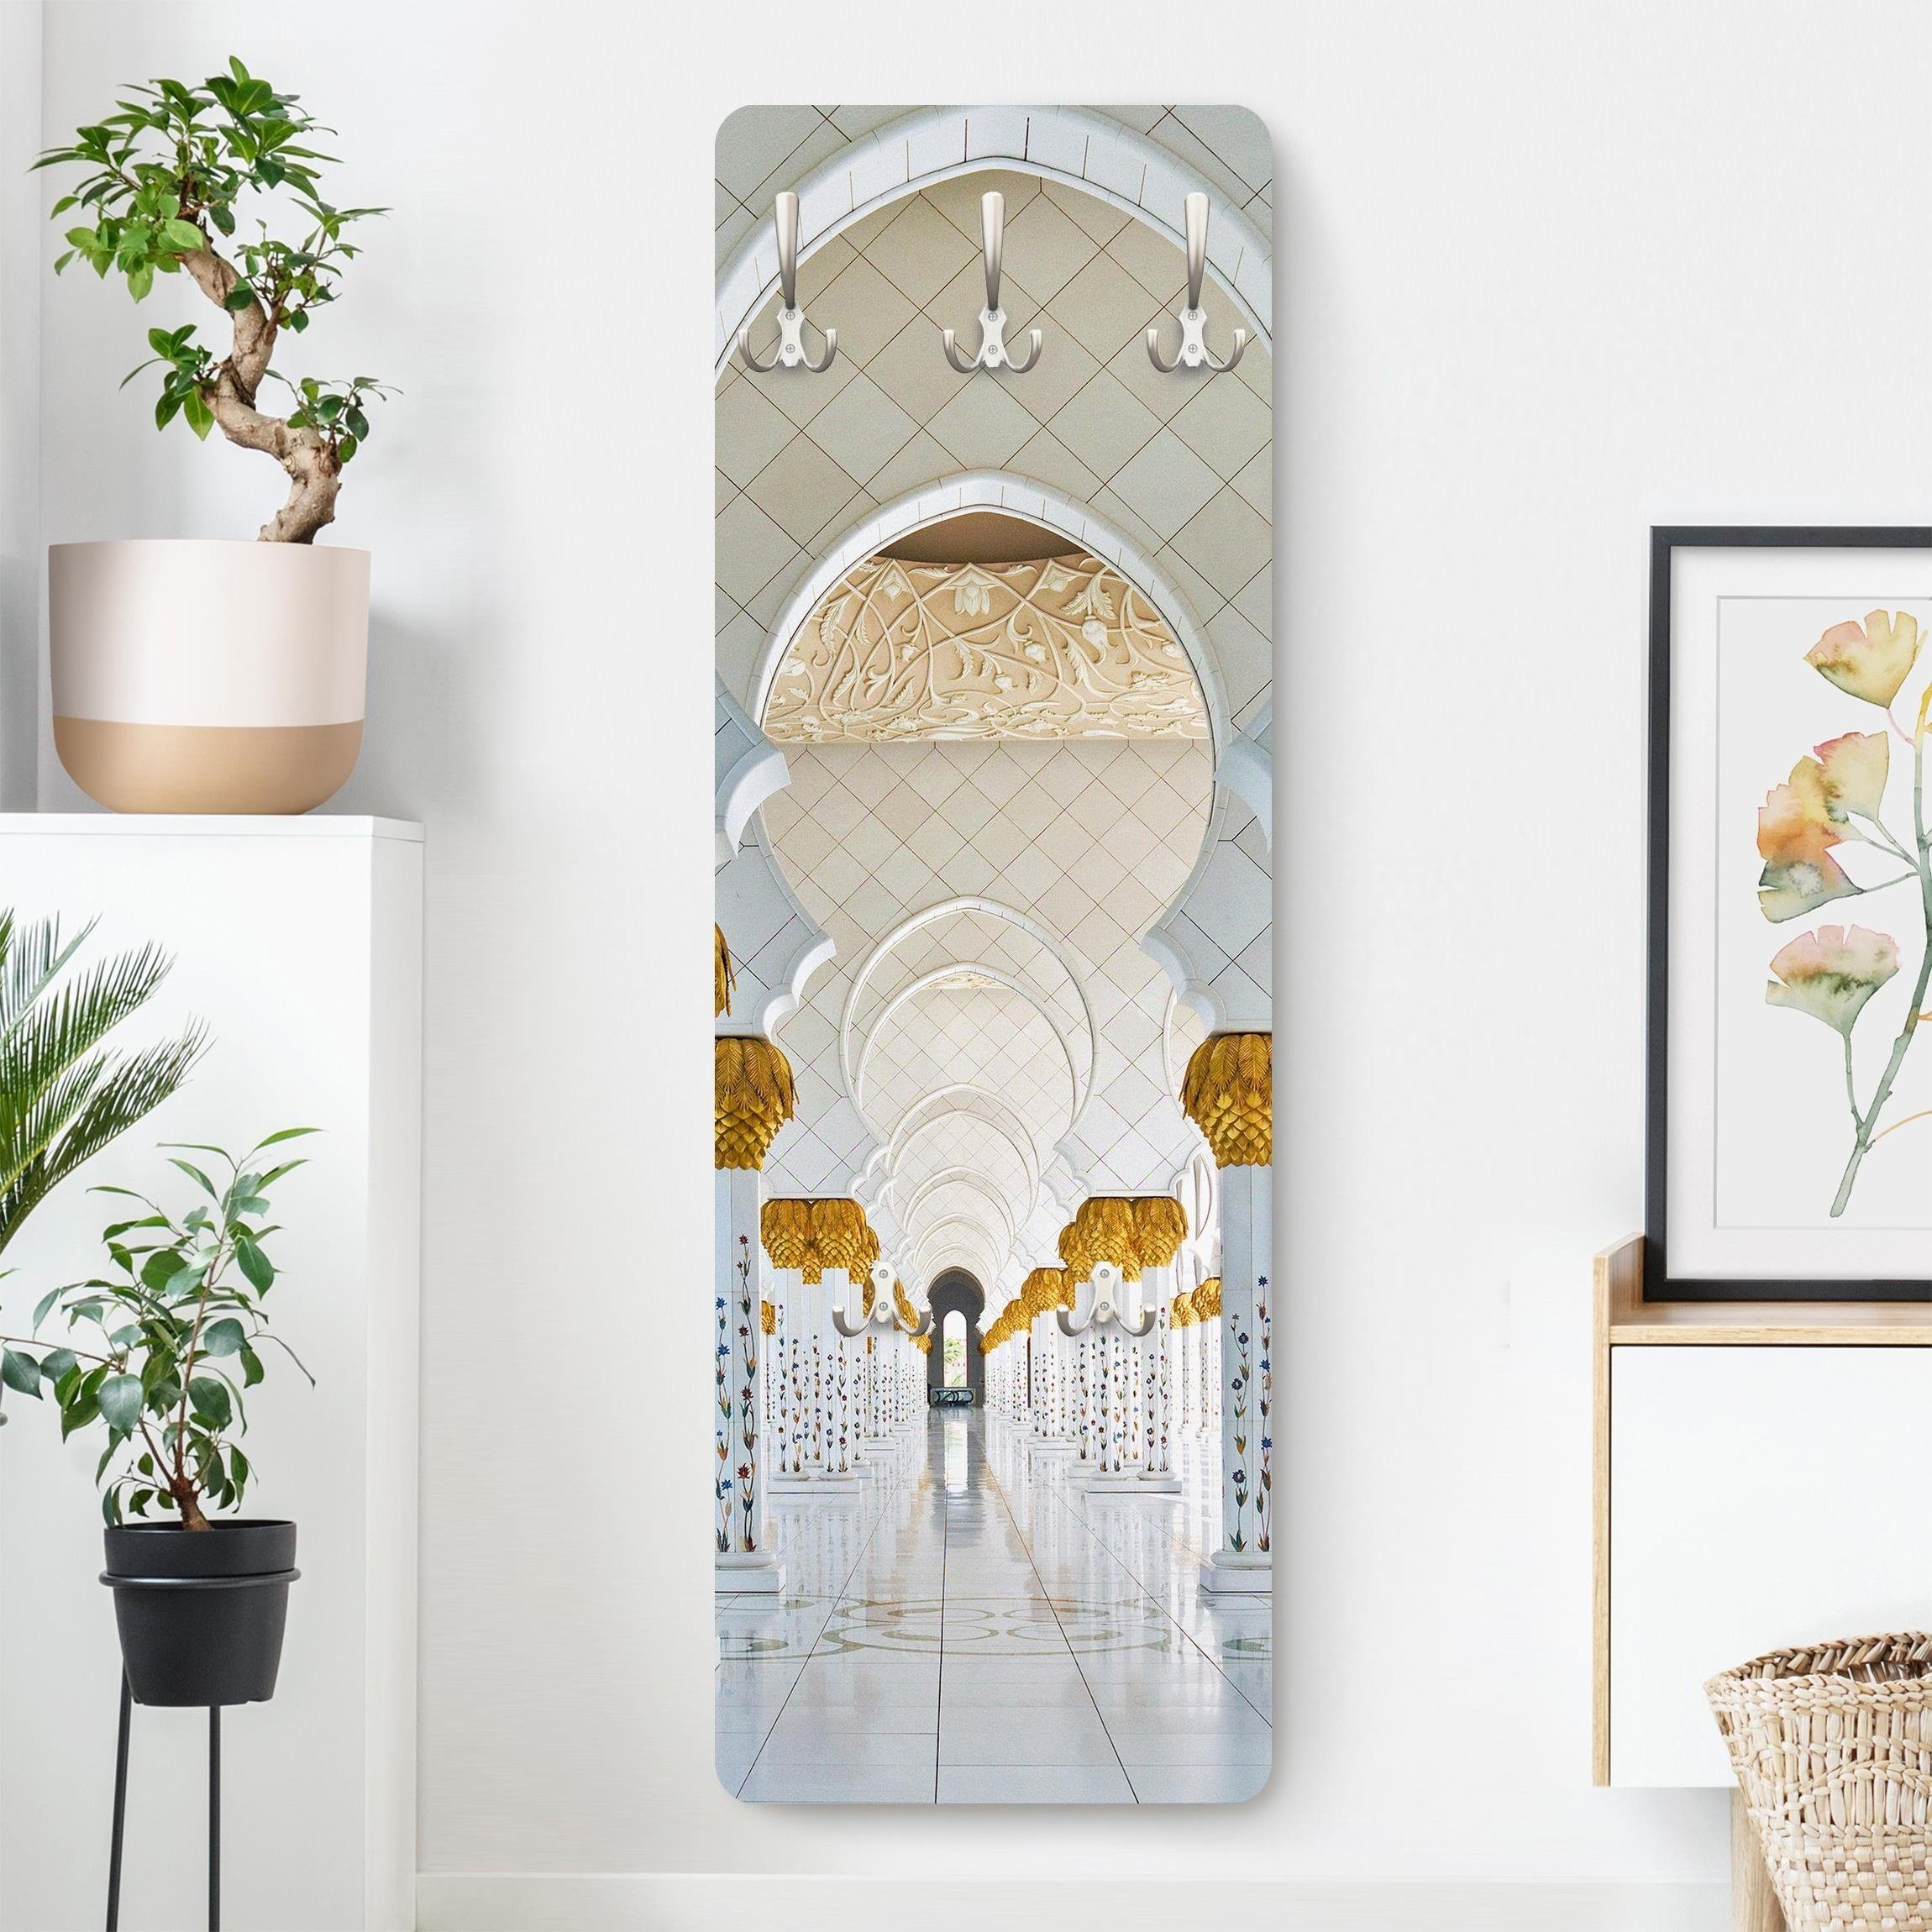 Bilderdepot24 Garderobenpaneel weiss Orientalisch Spirituell Städte Skyline Moschee in Abu Dhabi (ausgefallenes Flur Wandpaneel mit Garderobenhaken Kleiderhaken hängend), moderne Wandgarderobe - Flurgarderobe im schmalen Hakenpaneel Design